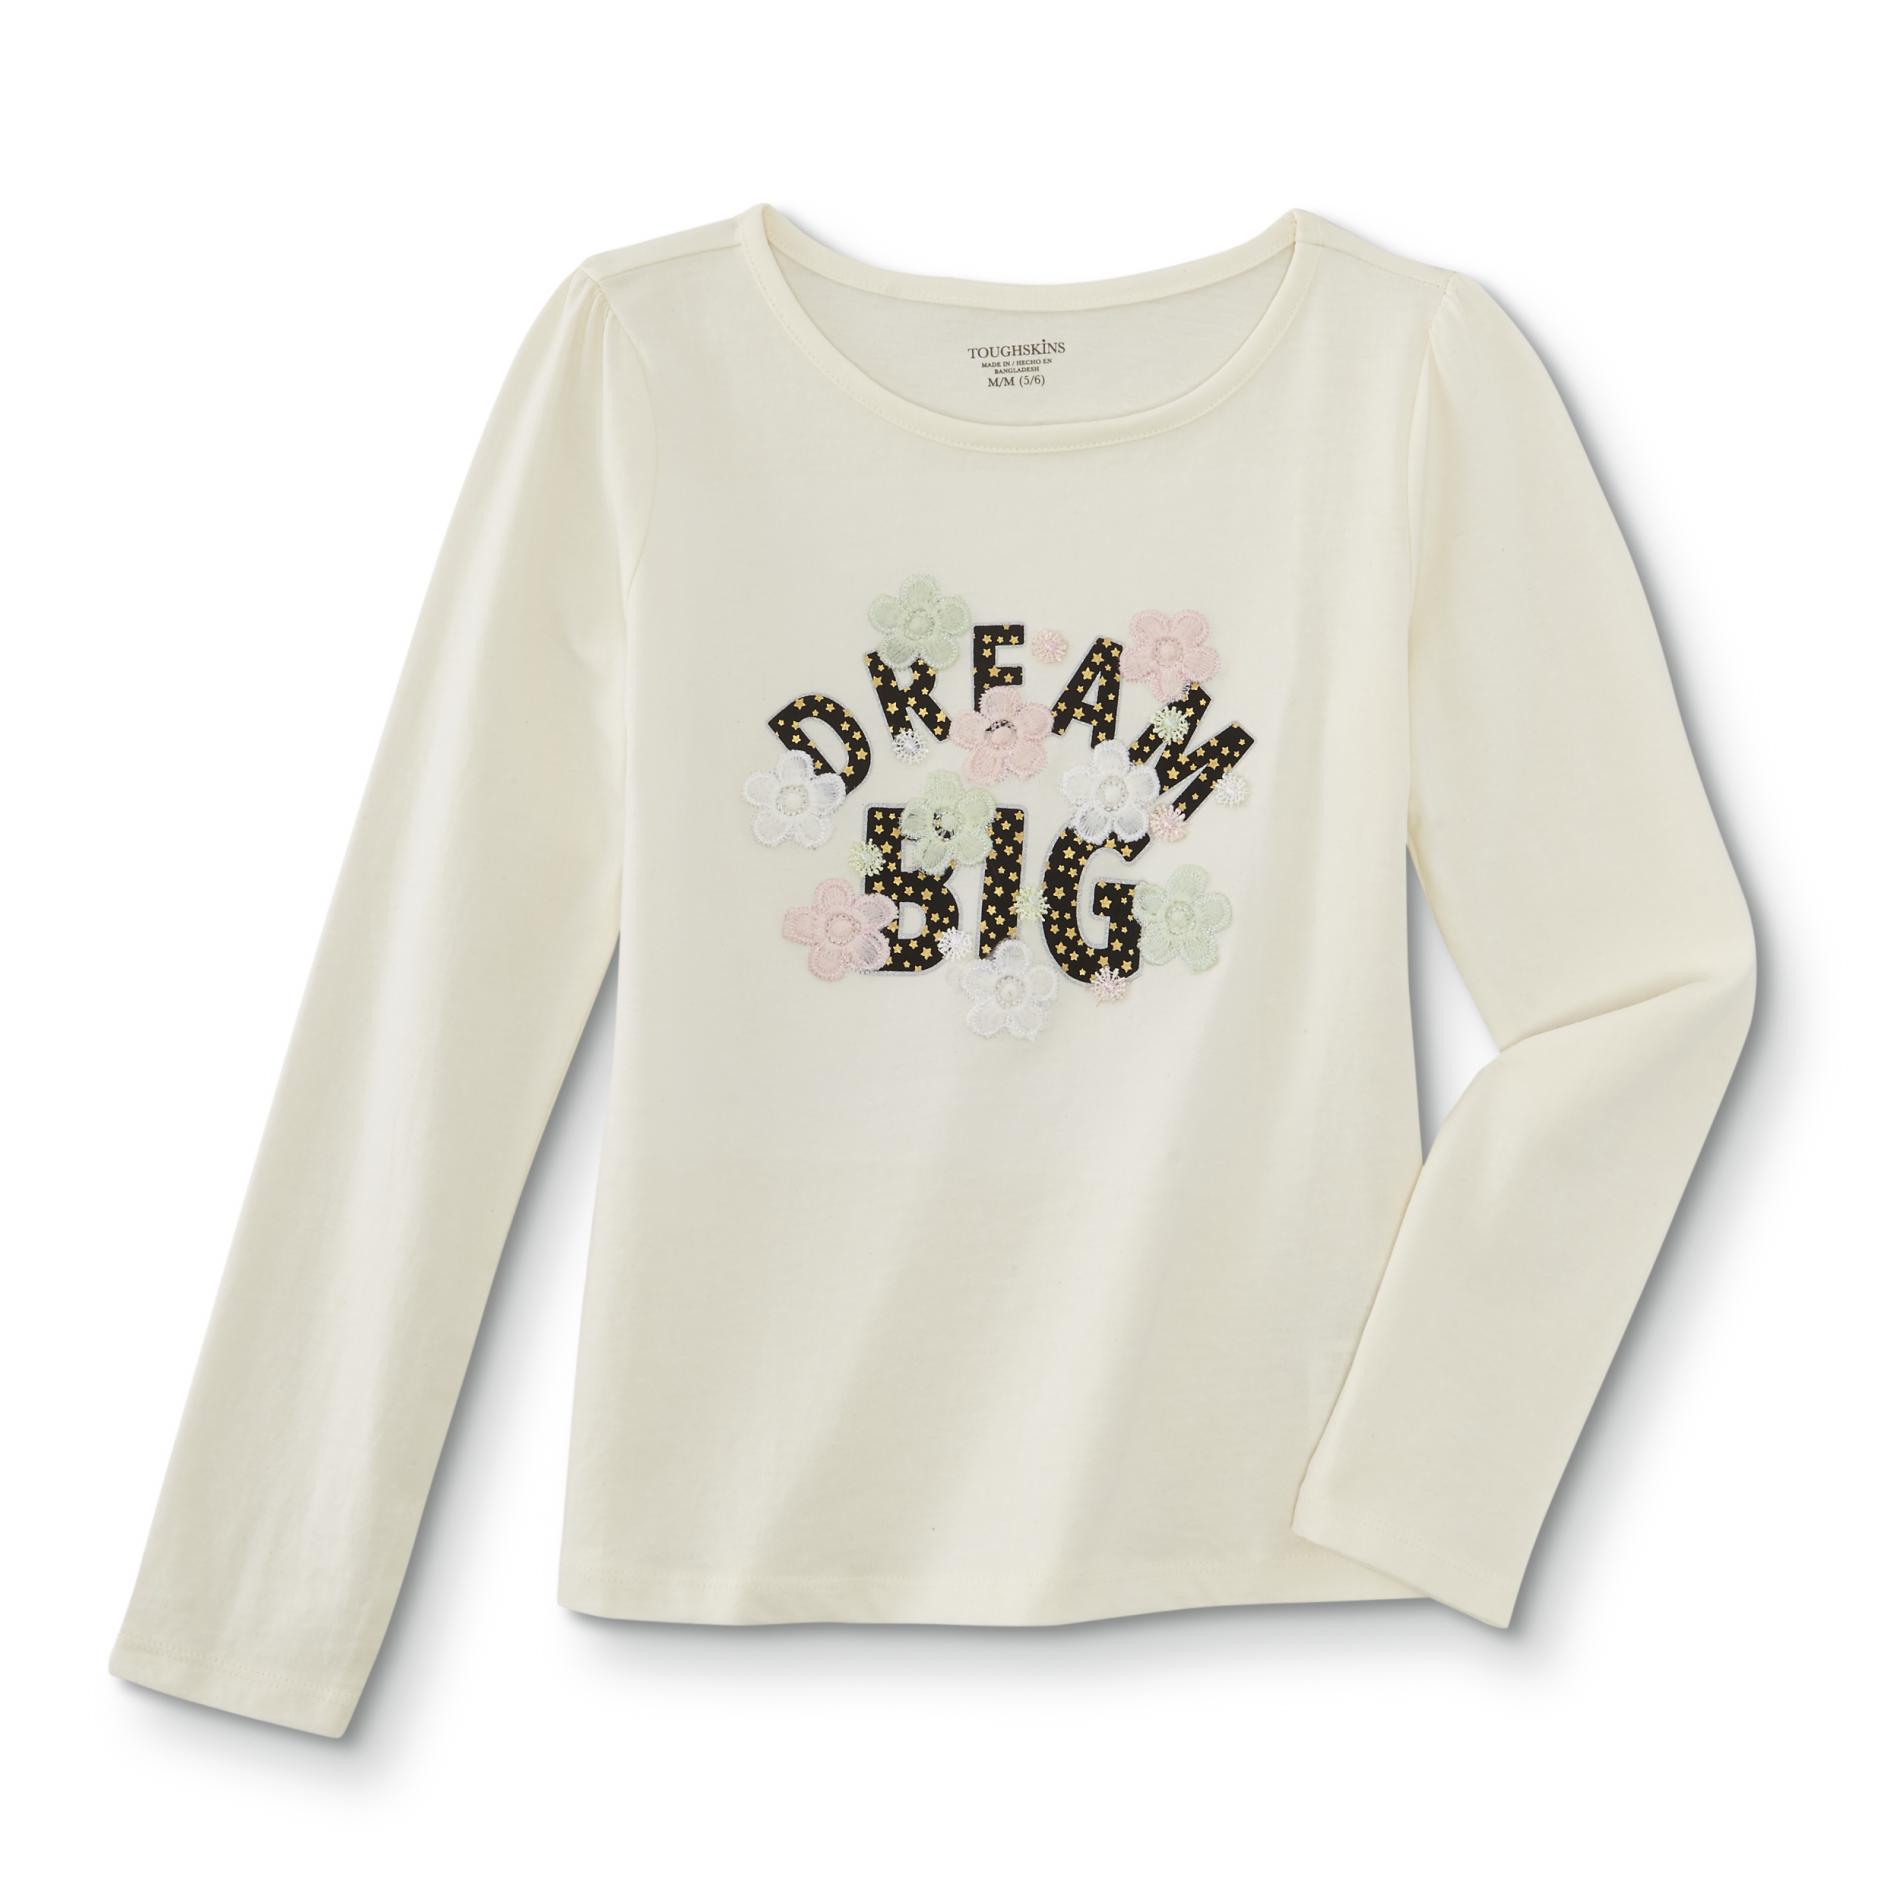 Toughskins Girls' Long-Sleeve T-Shirt - Dream Big